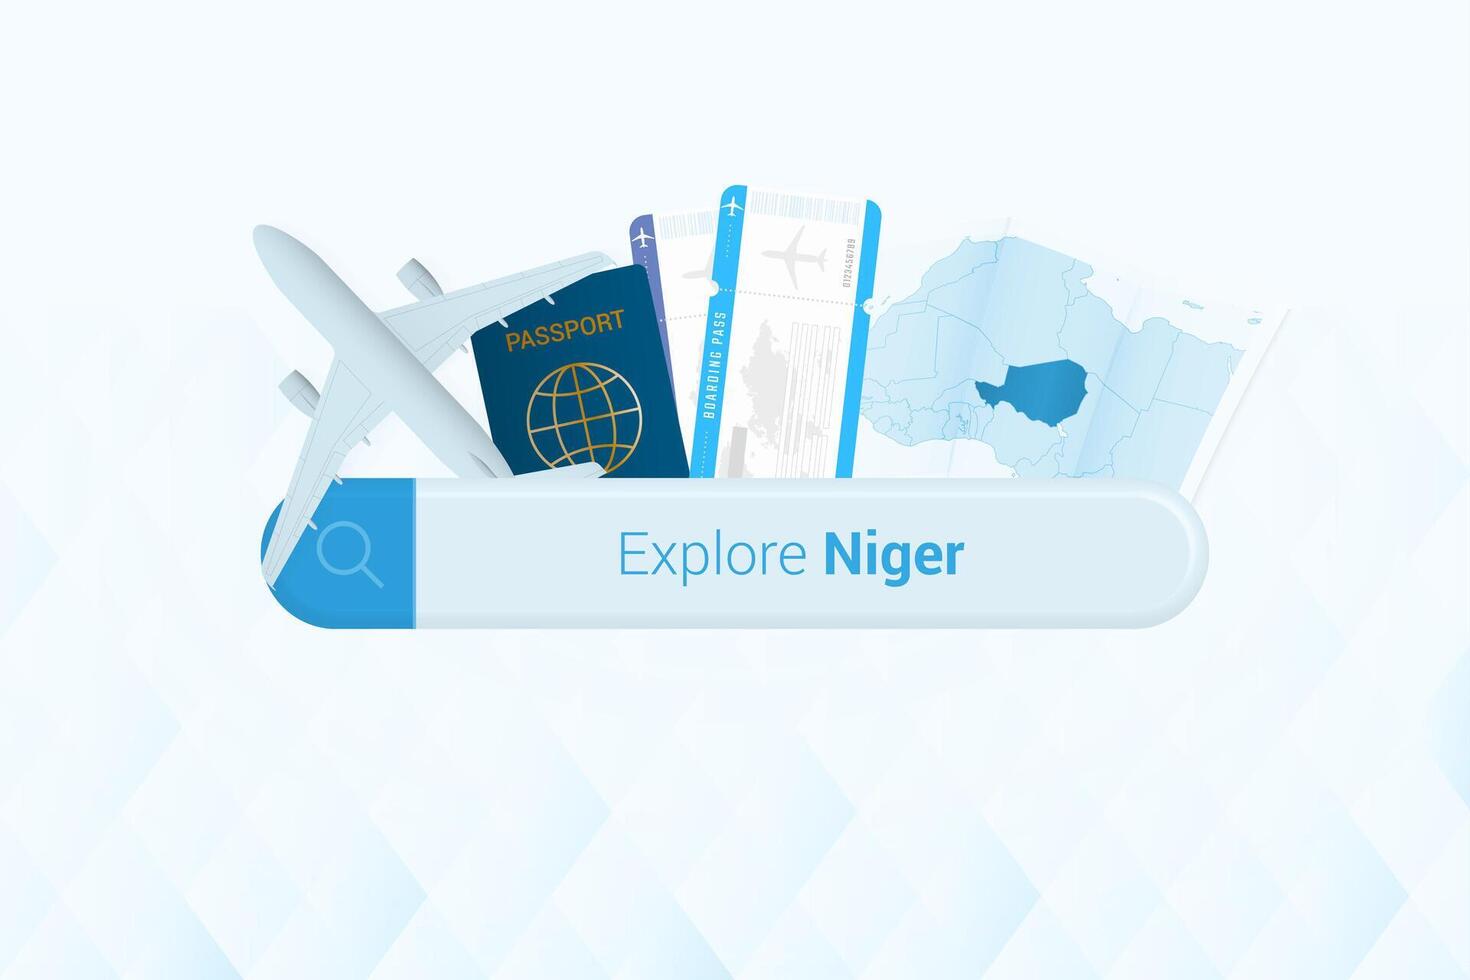 recherche des billets à Niger ou Voyage destination dans Niger. recherche bar avec avion, passeport, embarquement passer, des billets et carte. vecteur